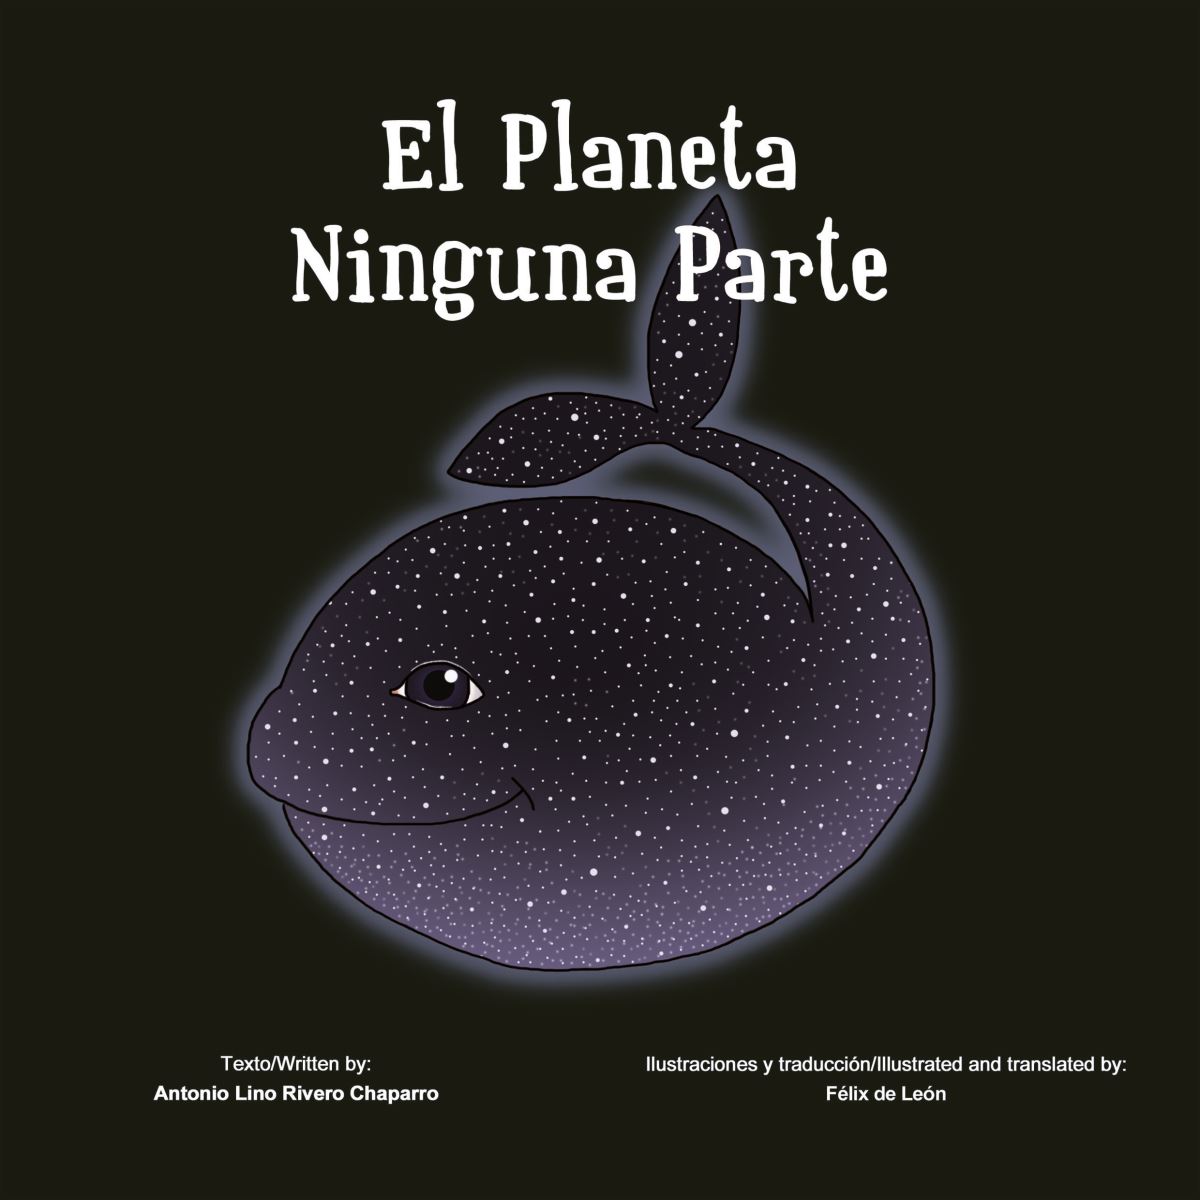 La ULPGC y la Fundación Mapfre Guanarteme consolidan la colección de Cuentos Solidarios, con la publicación del libro "El planeta Ninguna Parte", de Antonio Lino Rivero Chaparro